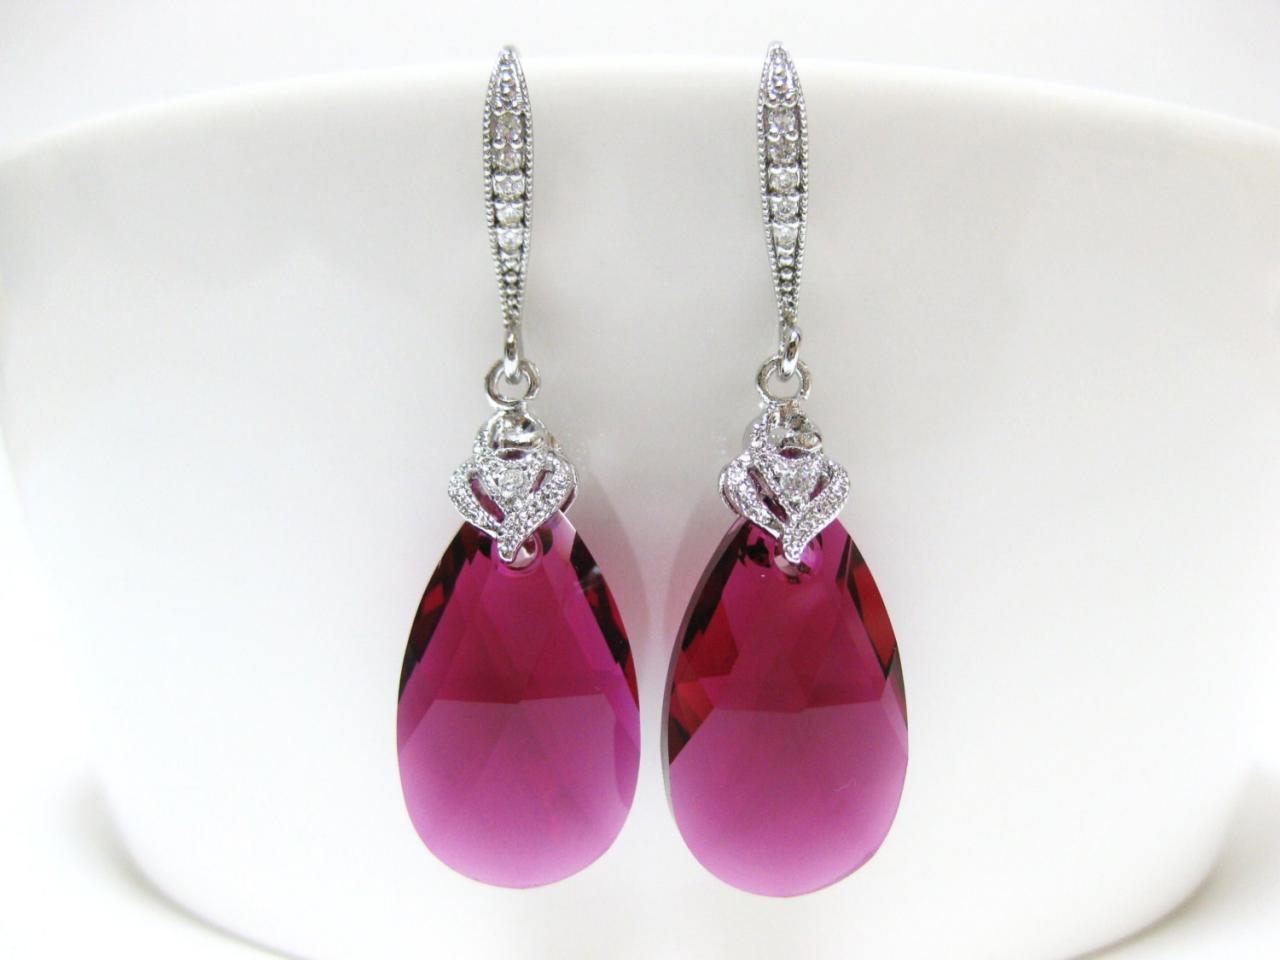 Ruby Teardrop Earrings Fuchsia Earrings Swarovski Crystal Pink Earrings Wedding Jewelry Bridal Drop Earrings Bridesmaids Gift (e023)